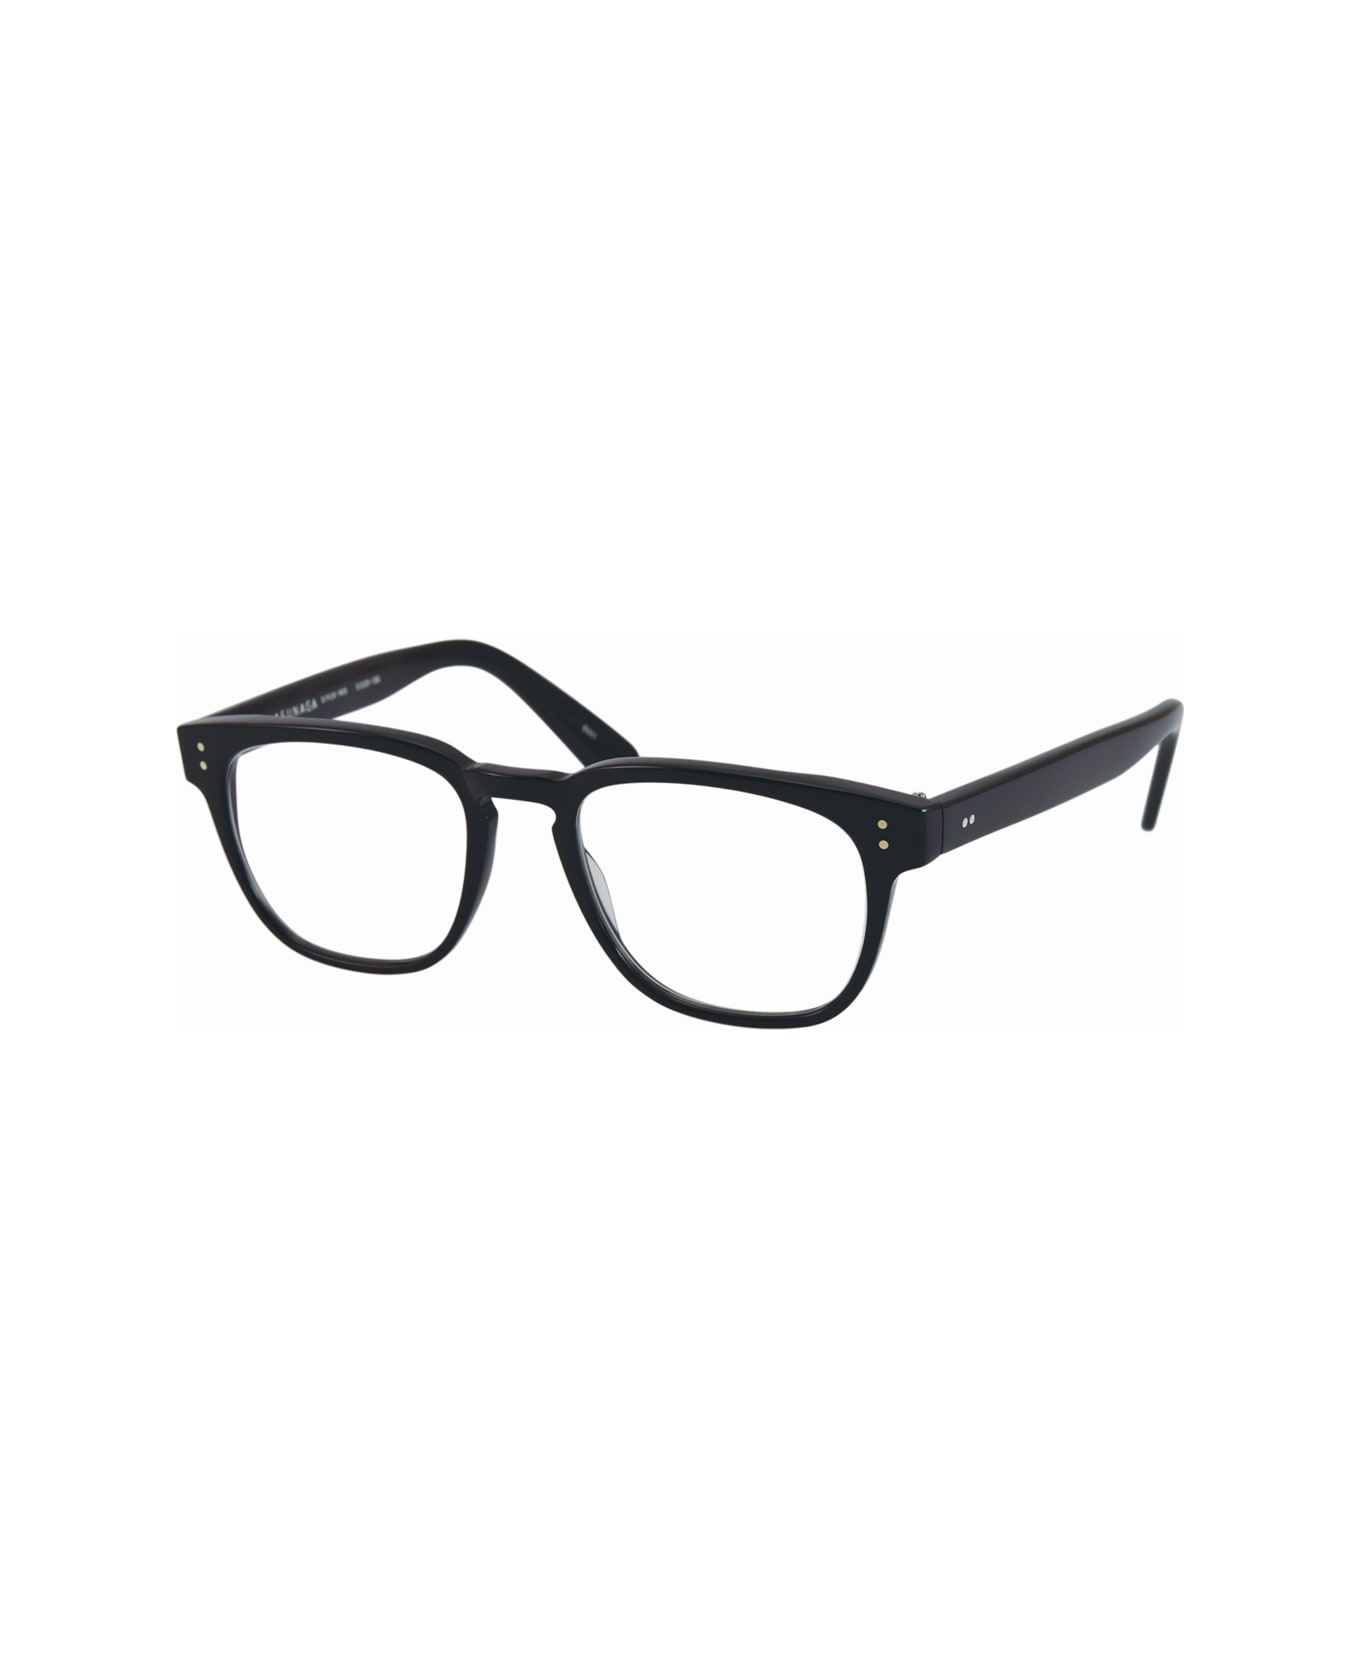 Masunaga 11dm4bl0a Glasses - Nero アイウェア